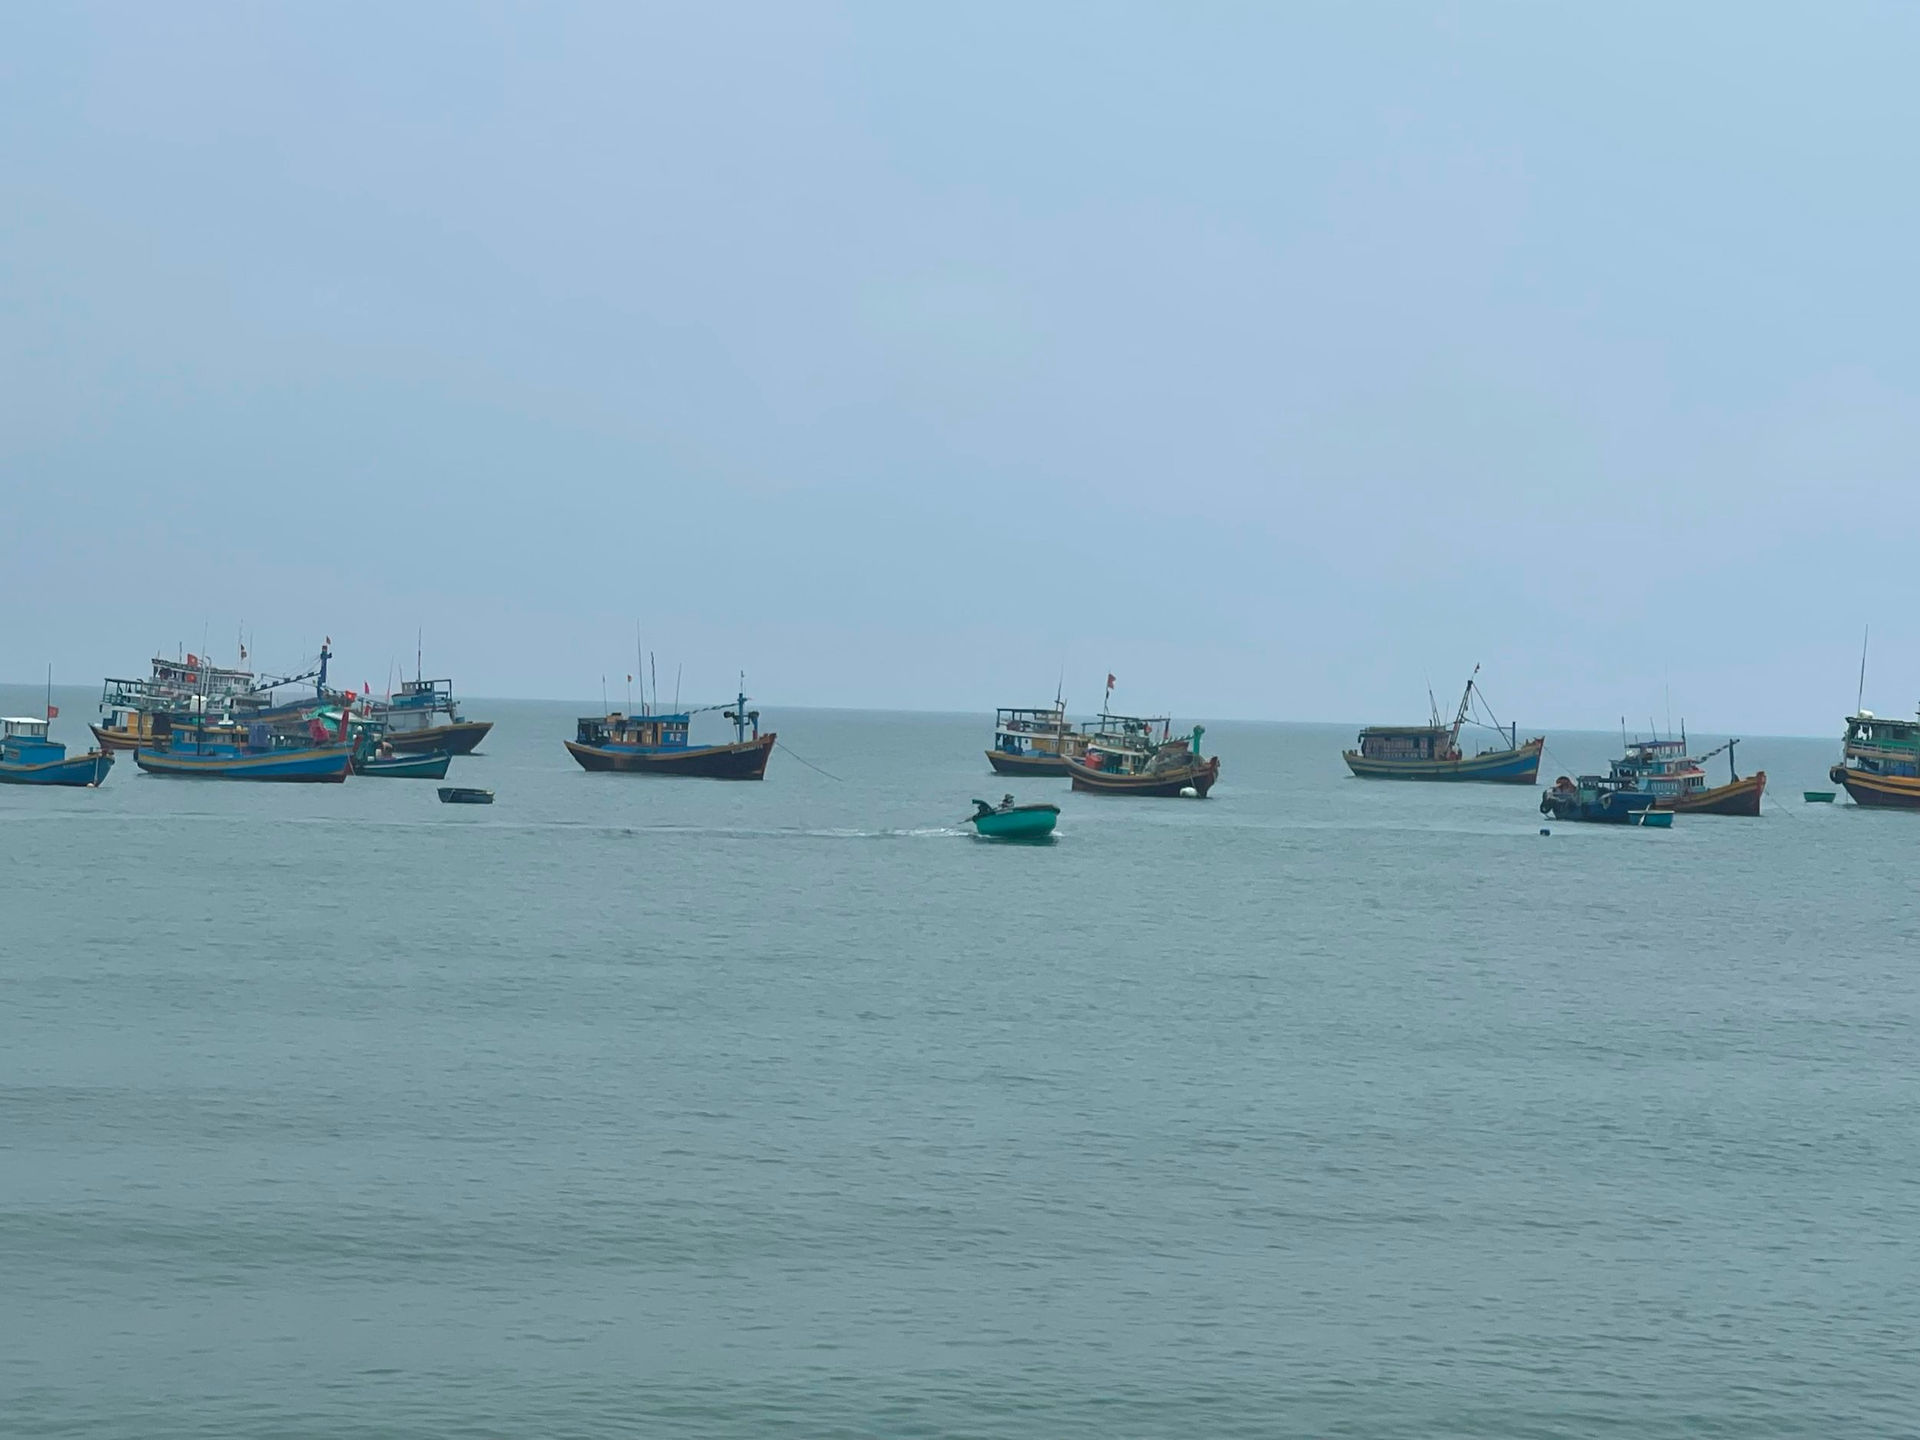 Bình Thuận: Vẫn chưa có tín hiệu và chưa liên lạc được với tàu cá có 16 thuyền viên bị mất tín hiệu  - Ảnh 3.